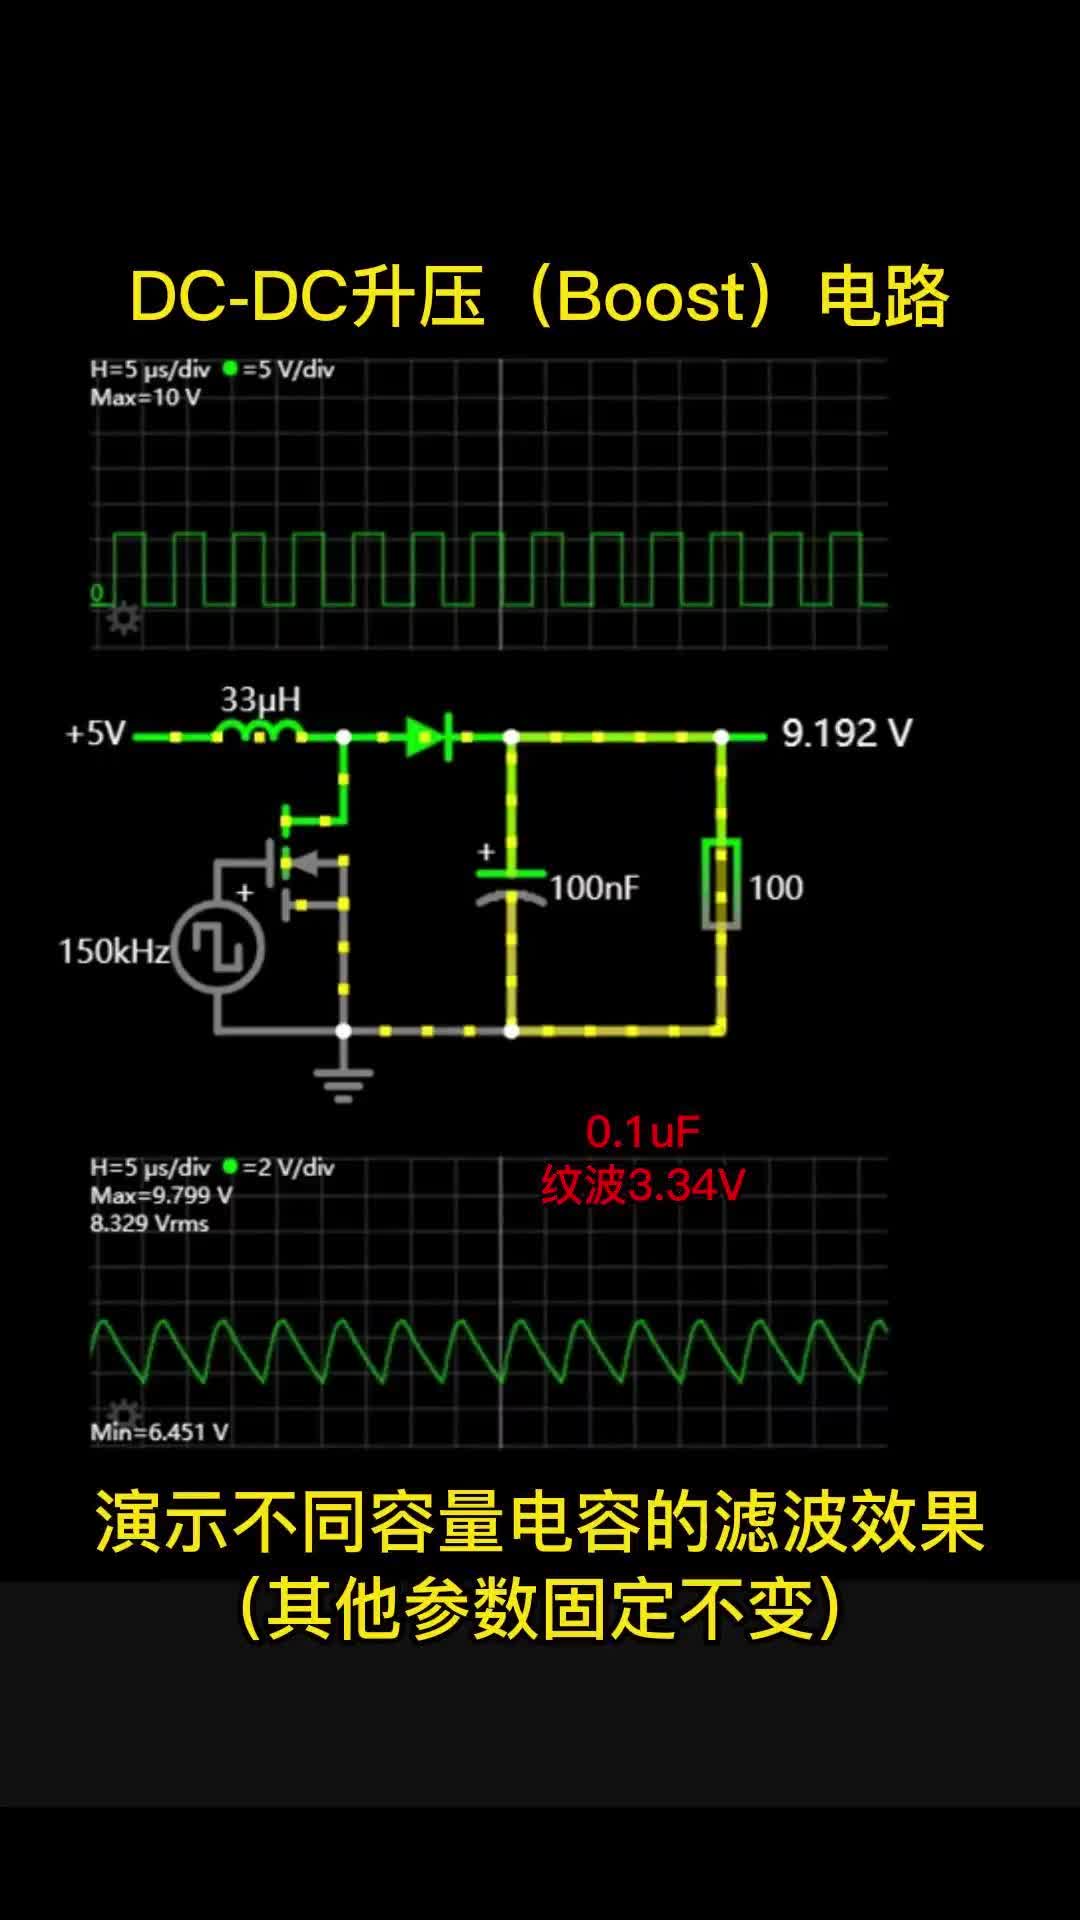 00004 DC-DC升压(Boost)电路，演示不同容值电容的滤波效果（其他参数固定不变）电子森林 #电路 